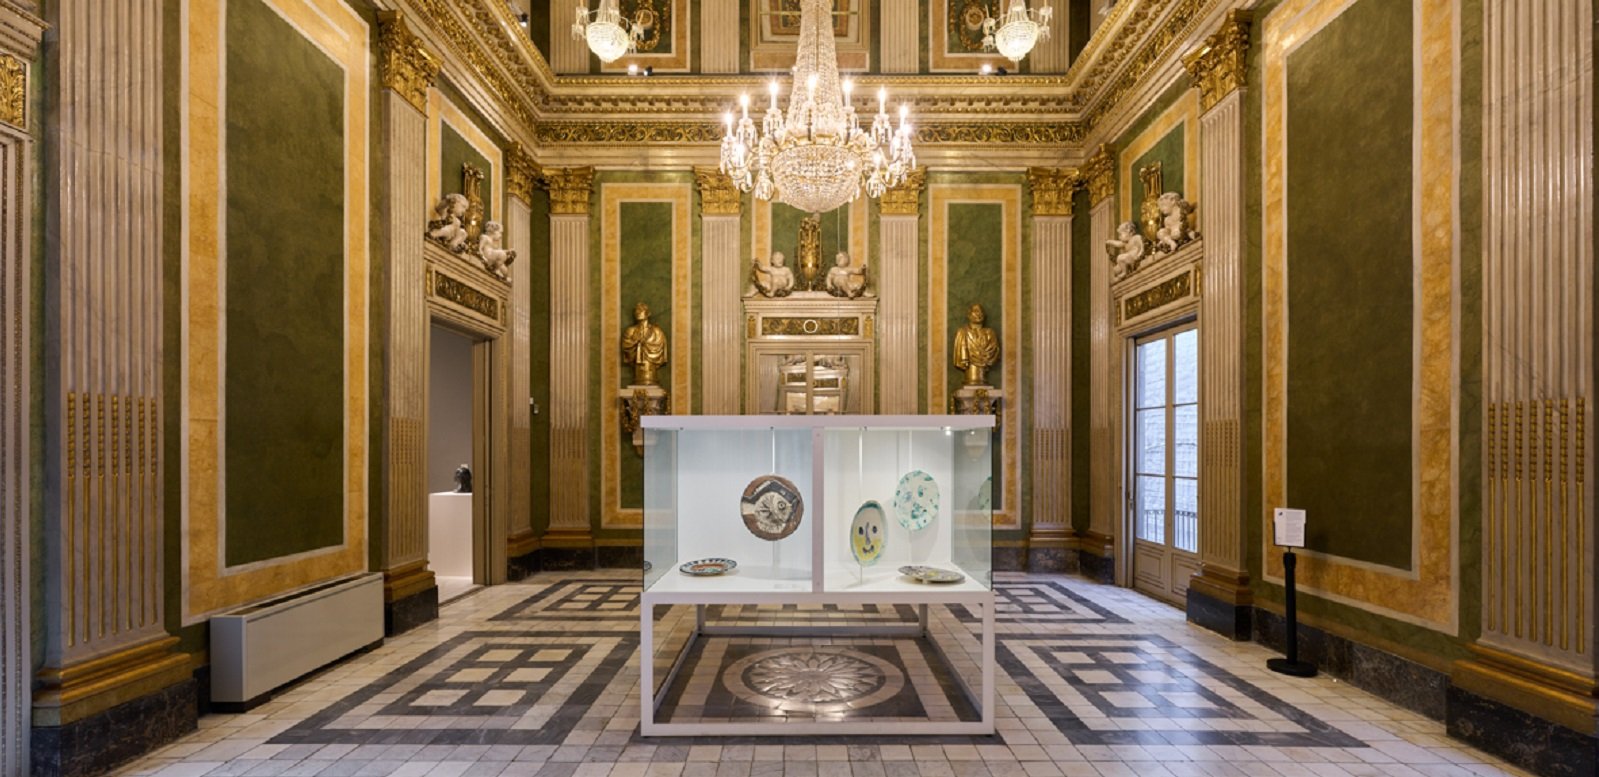 Colección permanente del Museu Picasso, Barcelona. Salón neoclásico